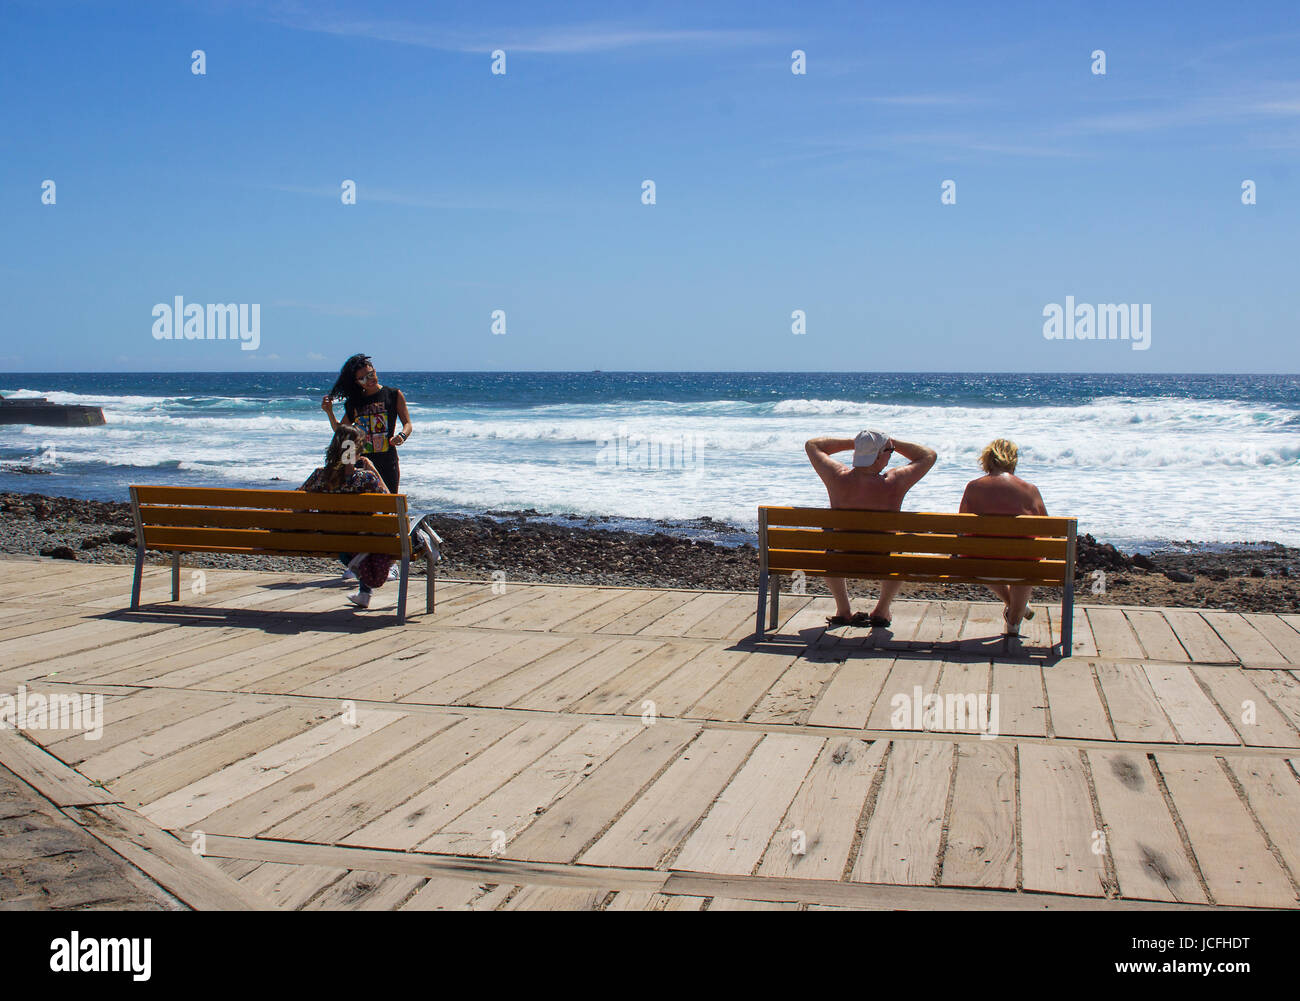 Le coppie relax su una terrazza in legno con vista sulla spiaggia in una calda giornata di sole in Playa Las Americas in Teneriffe spagnole nelle isole Canarie Foto Stock